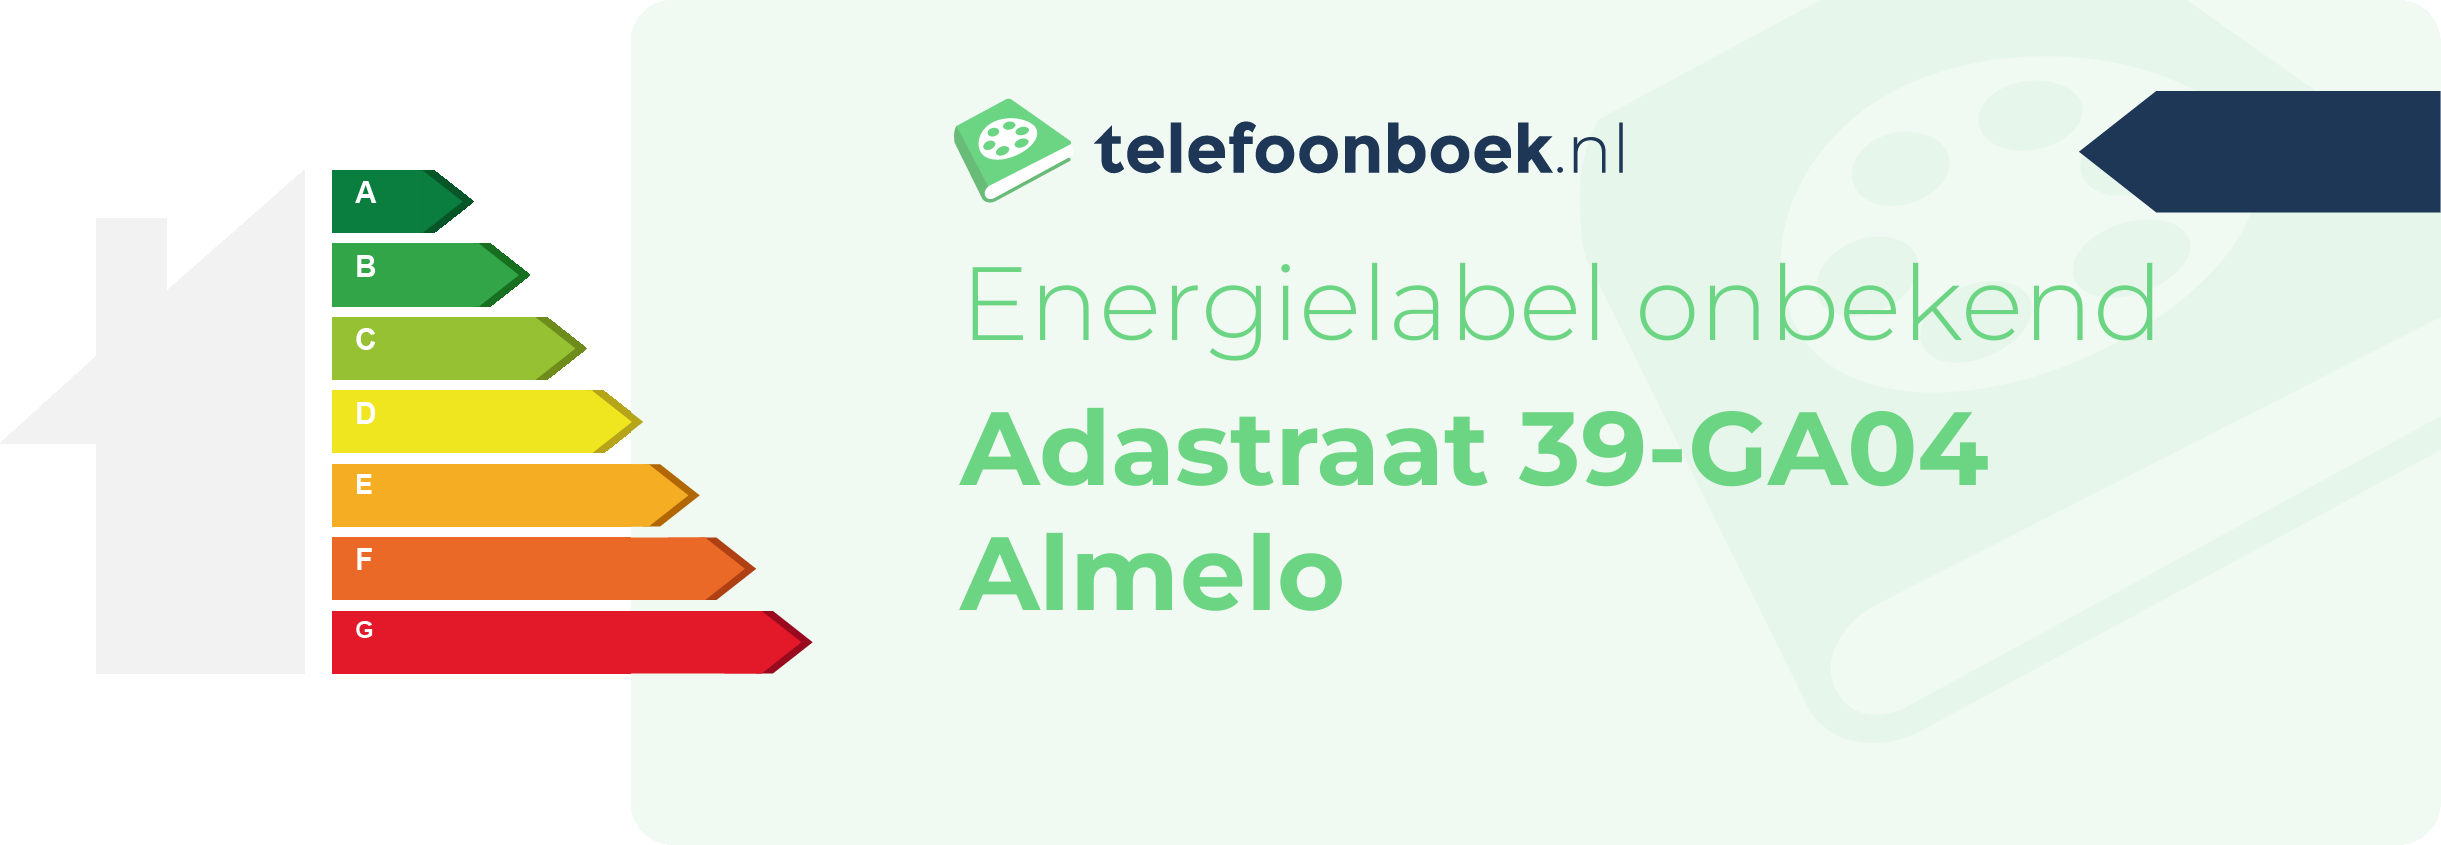 Energielabel Adastraat 39-GA04 Almelo